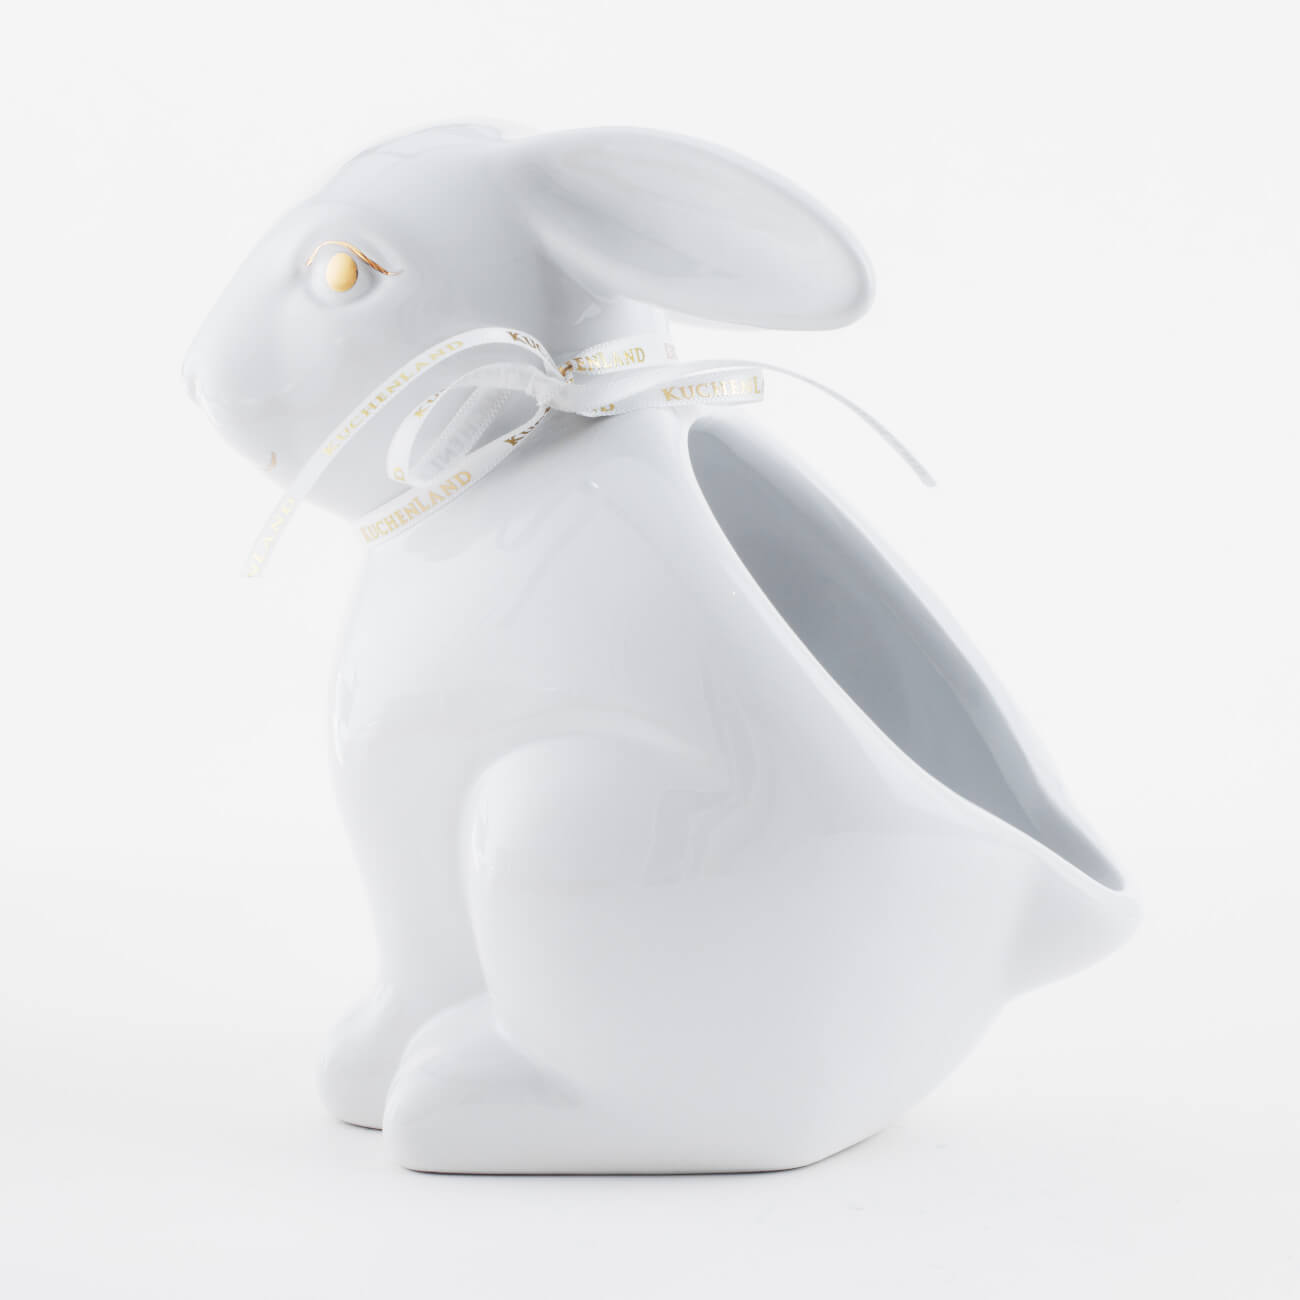 Конфетница, 17х17 см, керамика, белая, Кролик, Easter gold конфетница 30х12 см с ручками керамика белая перламутр два кролика в корзине easter